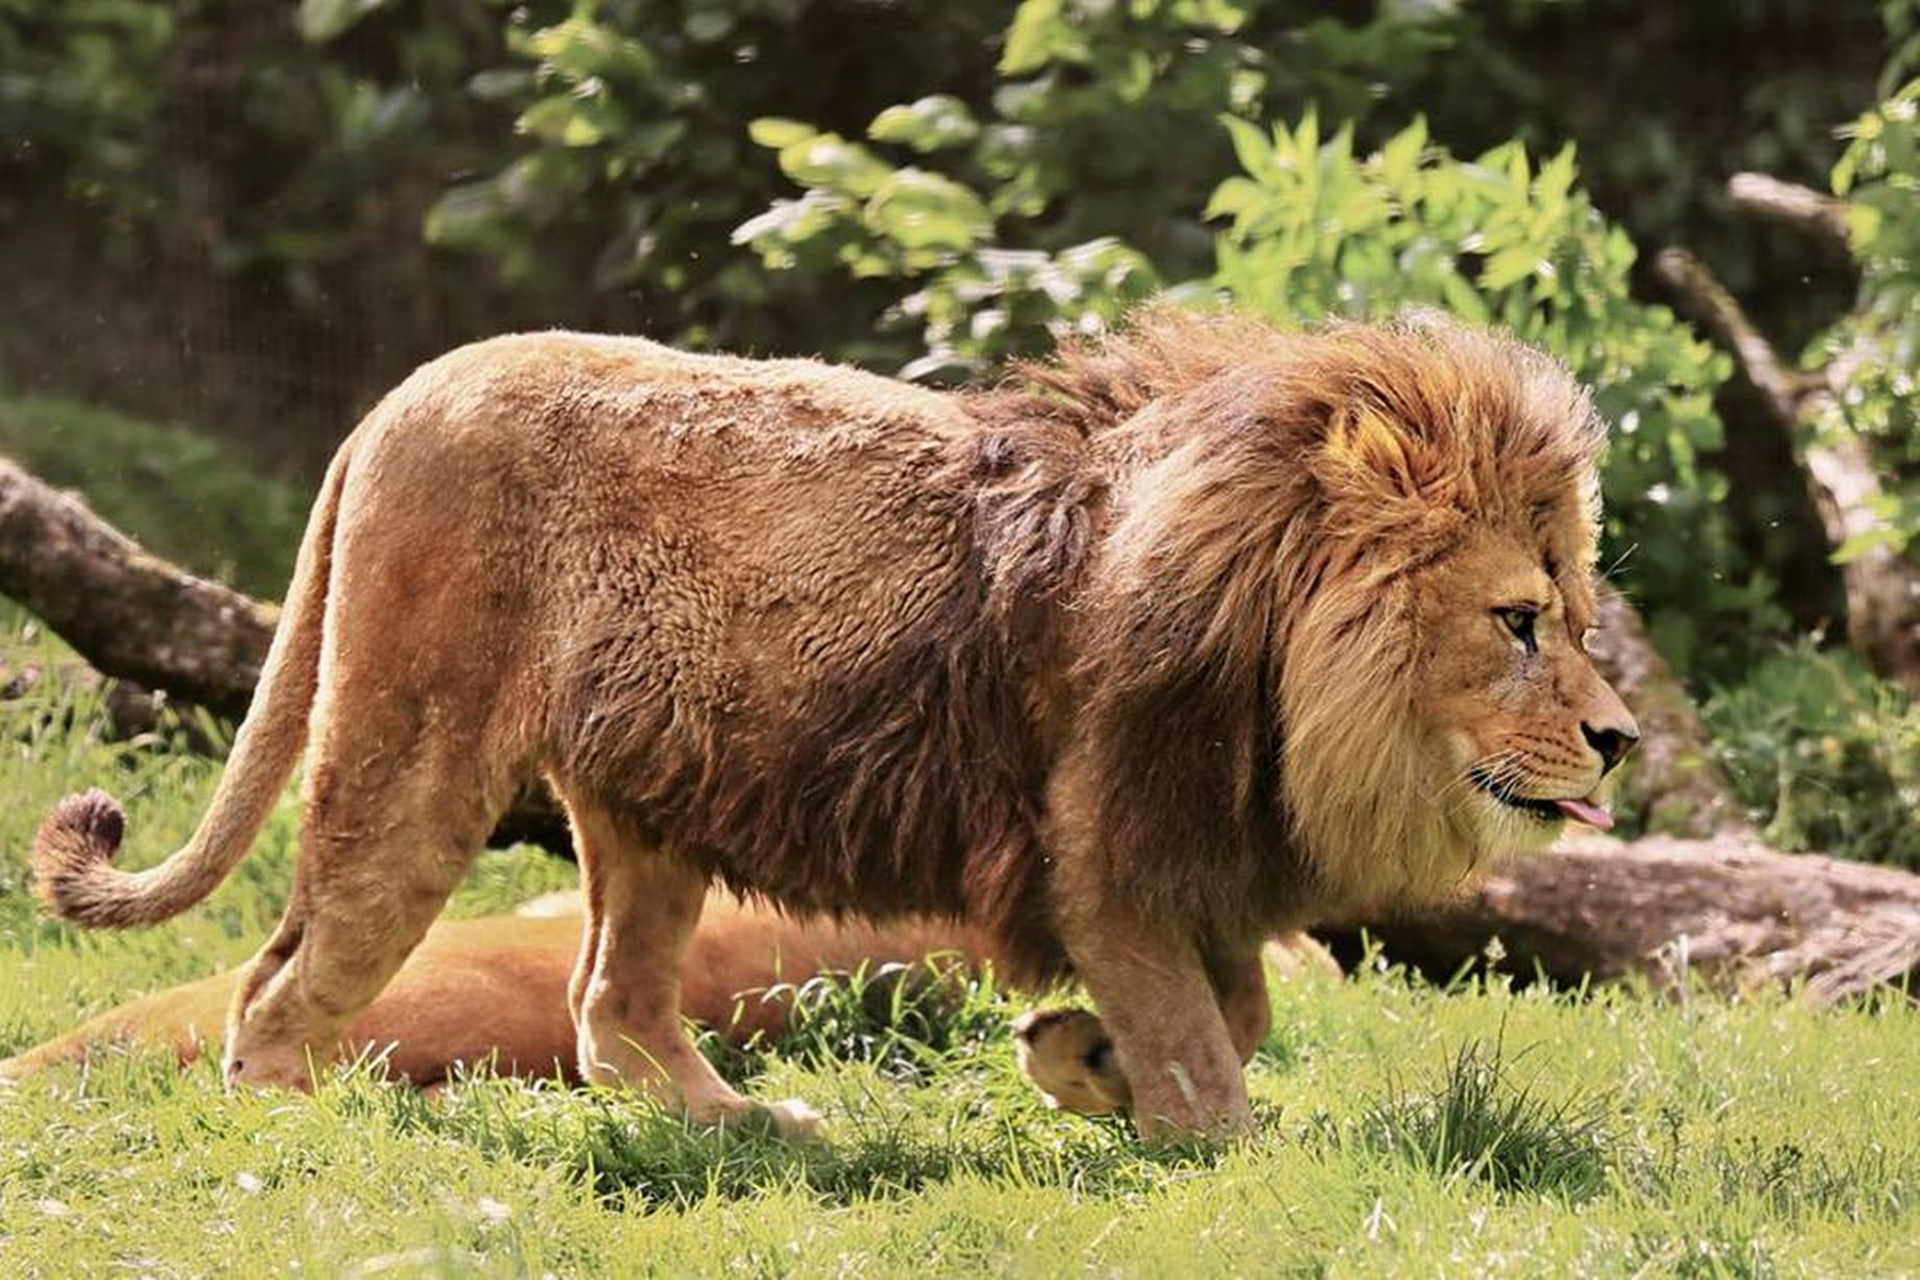 巴巴里狮子雄性体长2.35-2.8米,是狮子中的第二大亚种